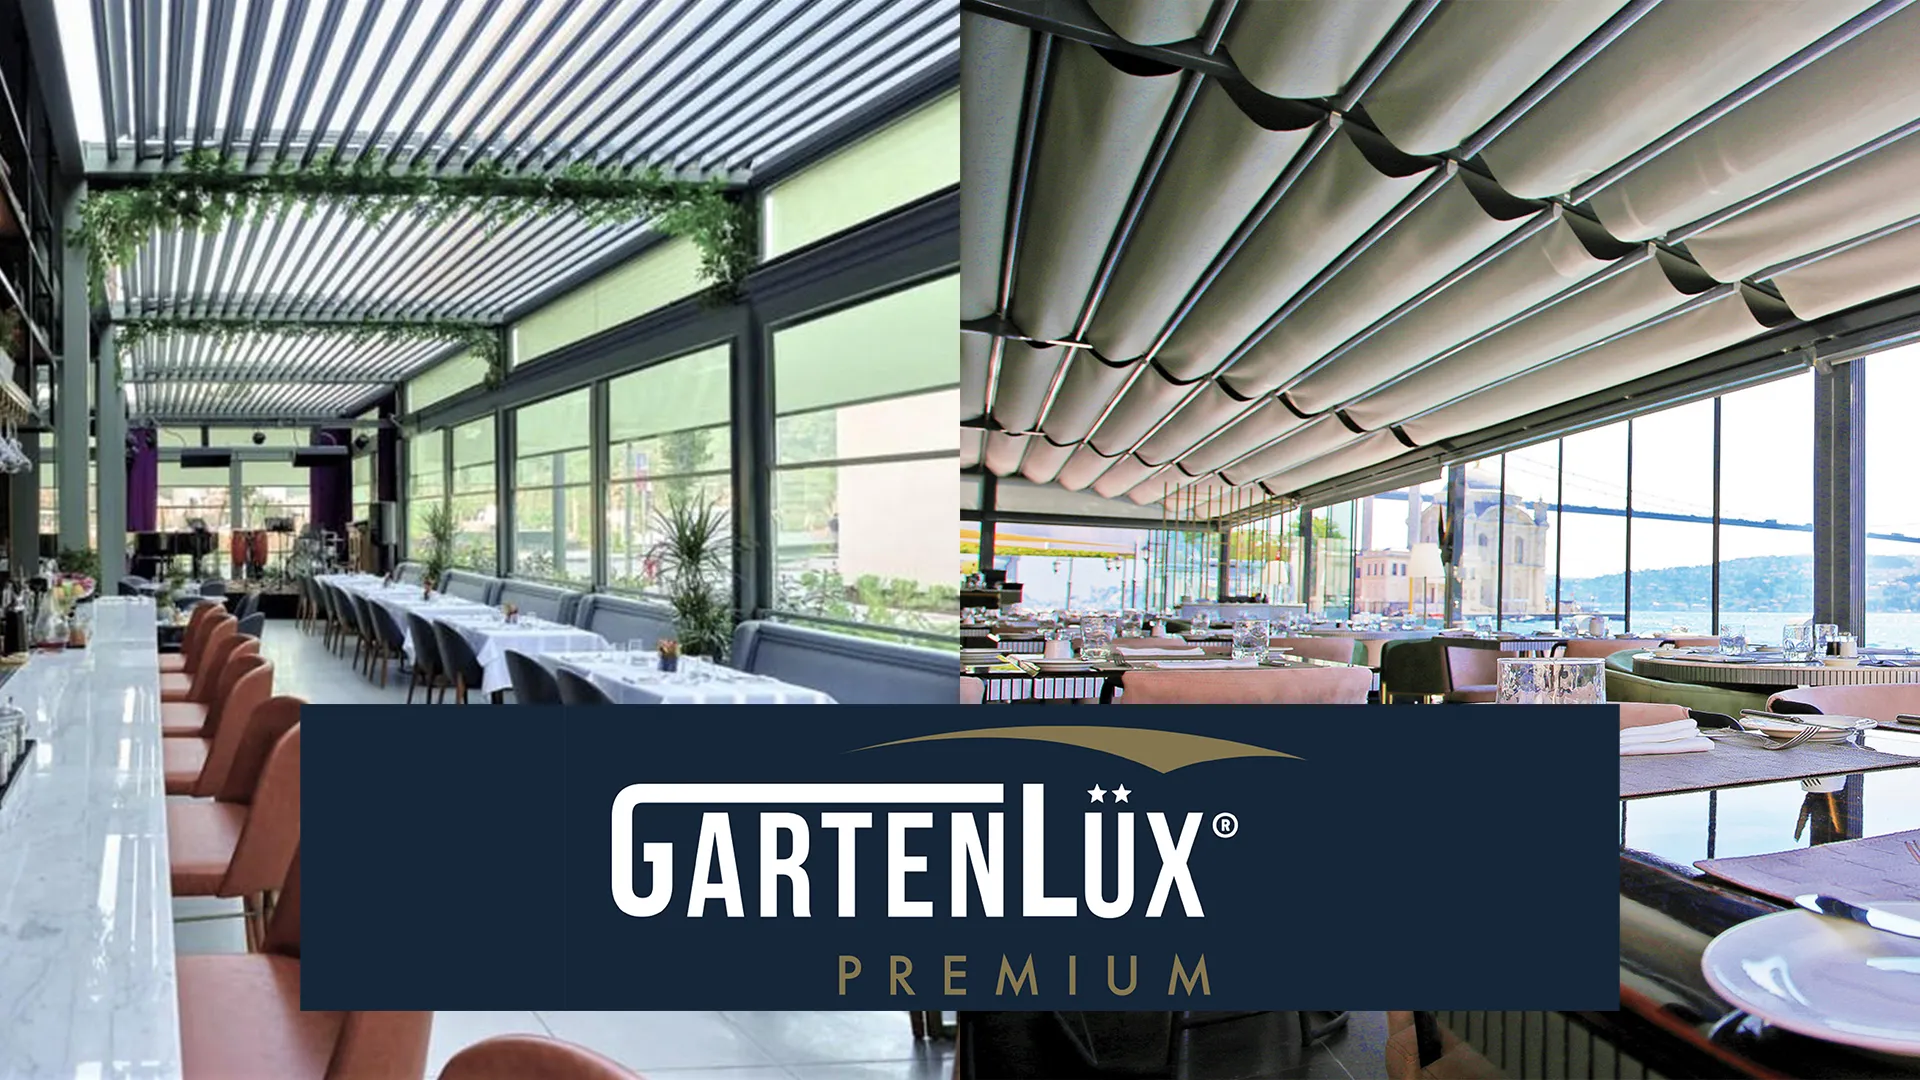 GartenLüx Premium is gespecialiseerd in het vormgeven en realiseren van horecaoplossingen. Daar is in de ontwikkeling van de Skyroof serie dan ook rekening mee gehouden. Door de flexibele en modulaire structuur is ieder terras, ongeacht de afmetingen, te overkappen.